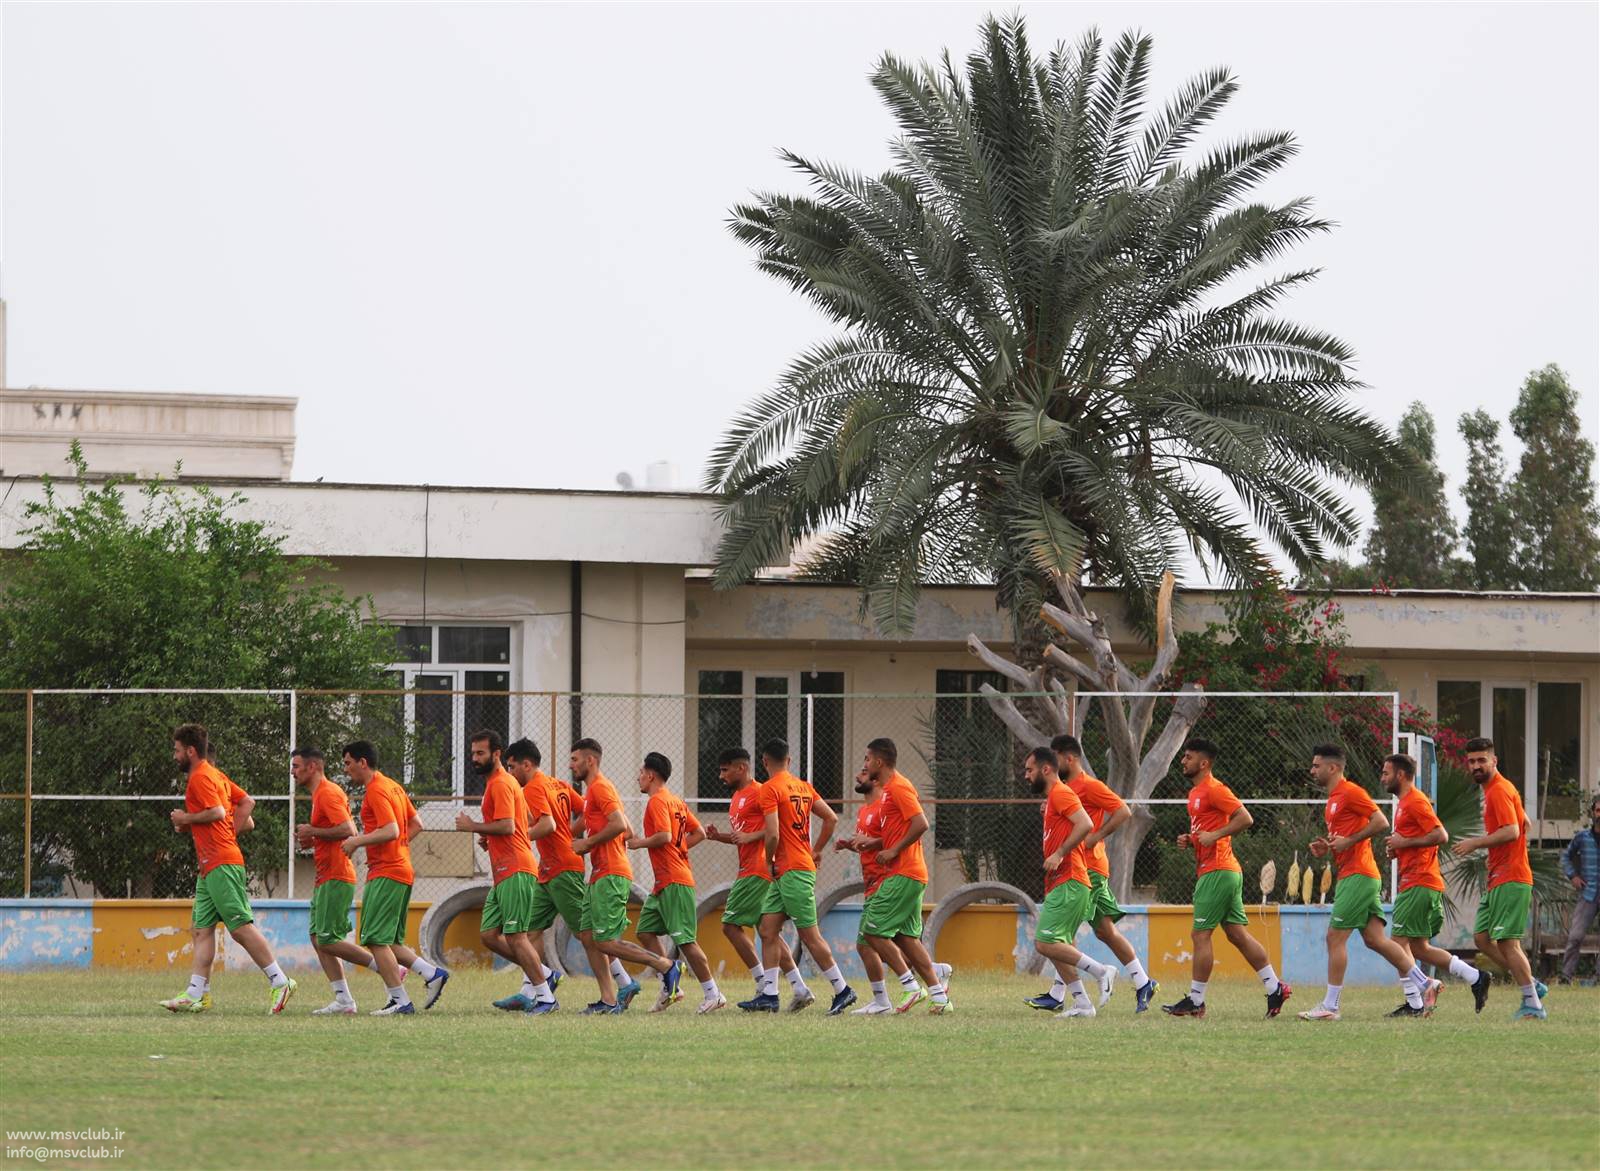 آخرین تمرین تیم فوتبال مس سونگون پیش از دیدار با فولاد هرمزگان